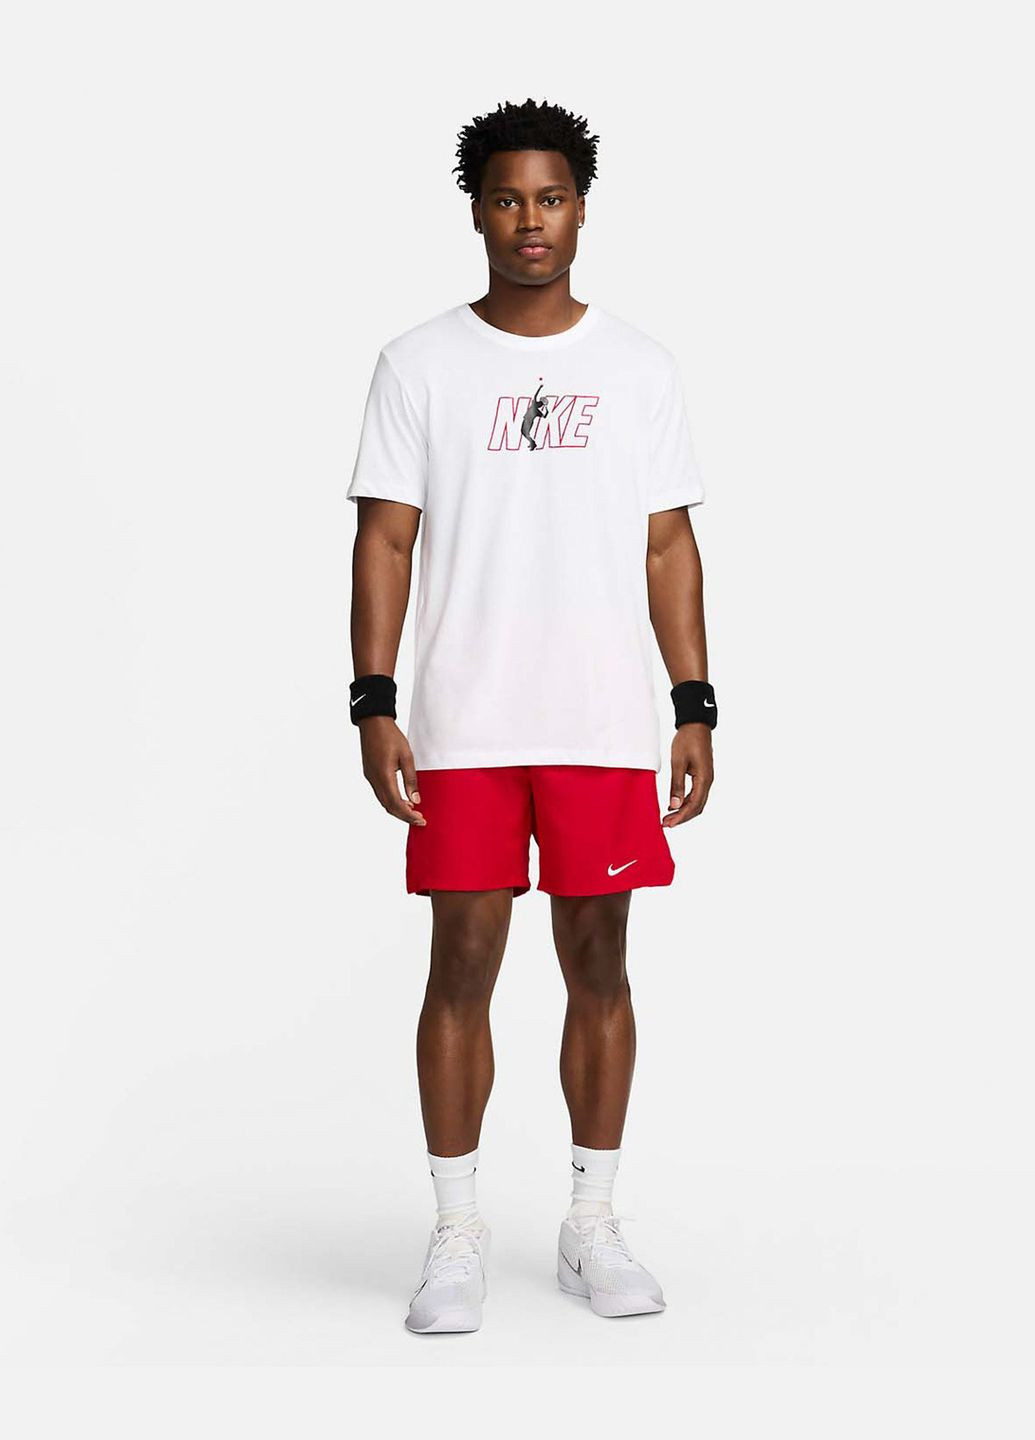 Біла футболка чоловіча court dri-fit tennis t-hirt fv8434-100 біла Nike